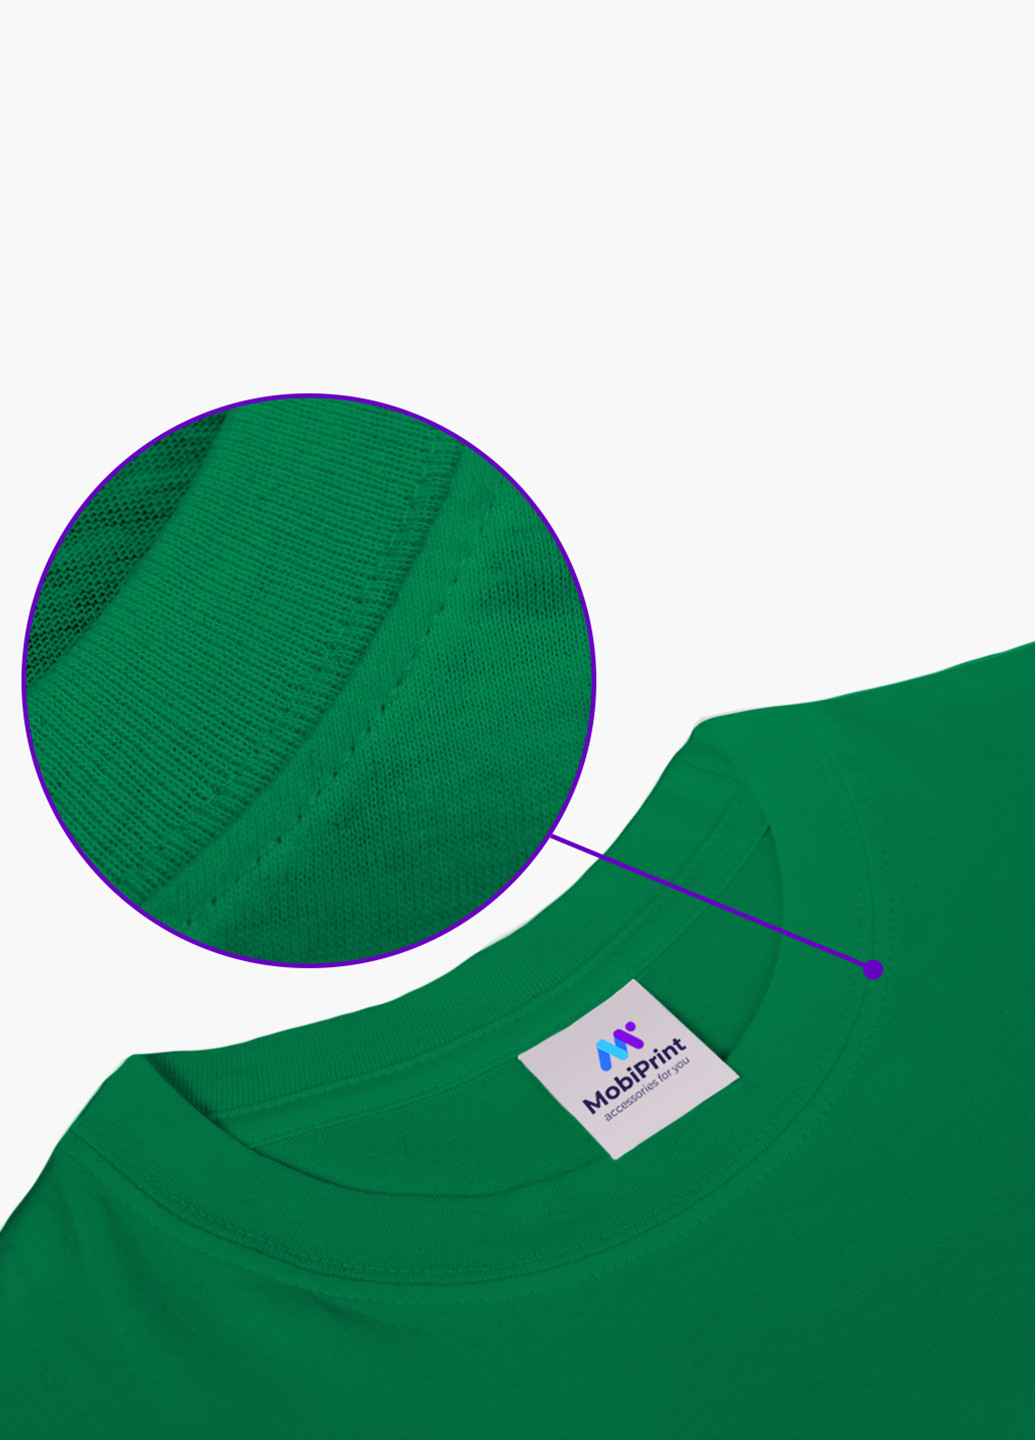 Зелена демісезонна футболка дитяча пубг пабг (pubg) (9224-1185) MobiPrint